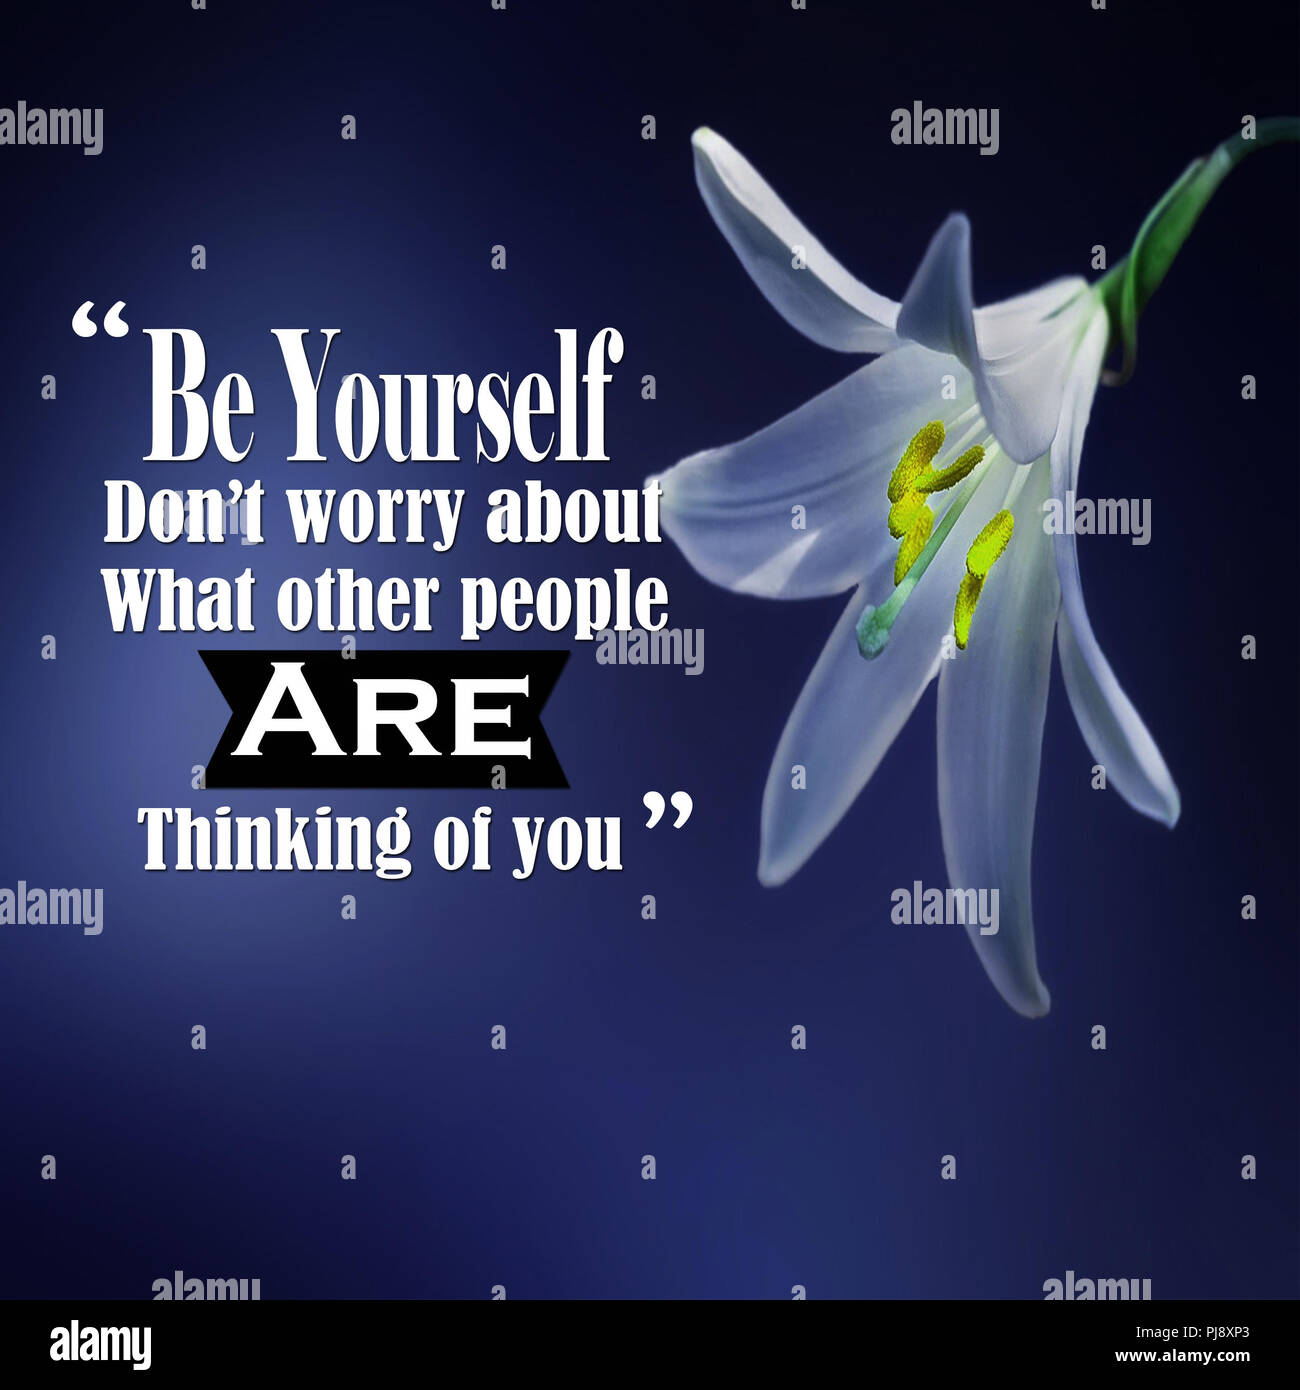 Des citations inspirantes : Soyez vous-même ne vous inquiétez pas de ce que les autres pensent de vous, positif, la motivation, l'inspiration Banque D'Images